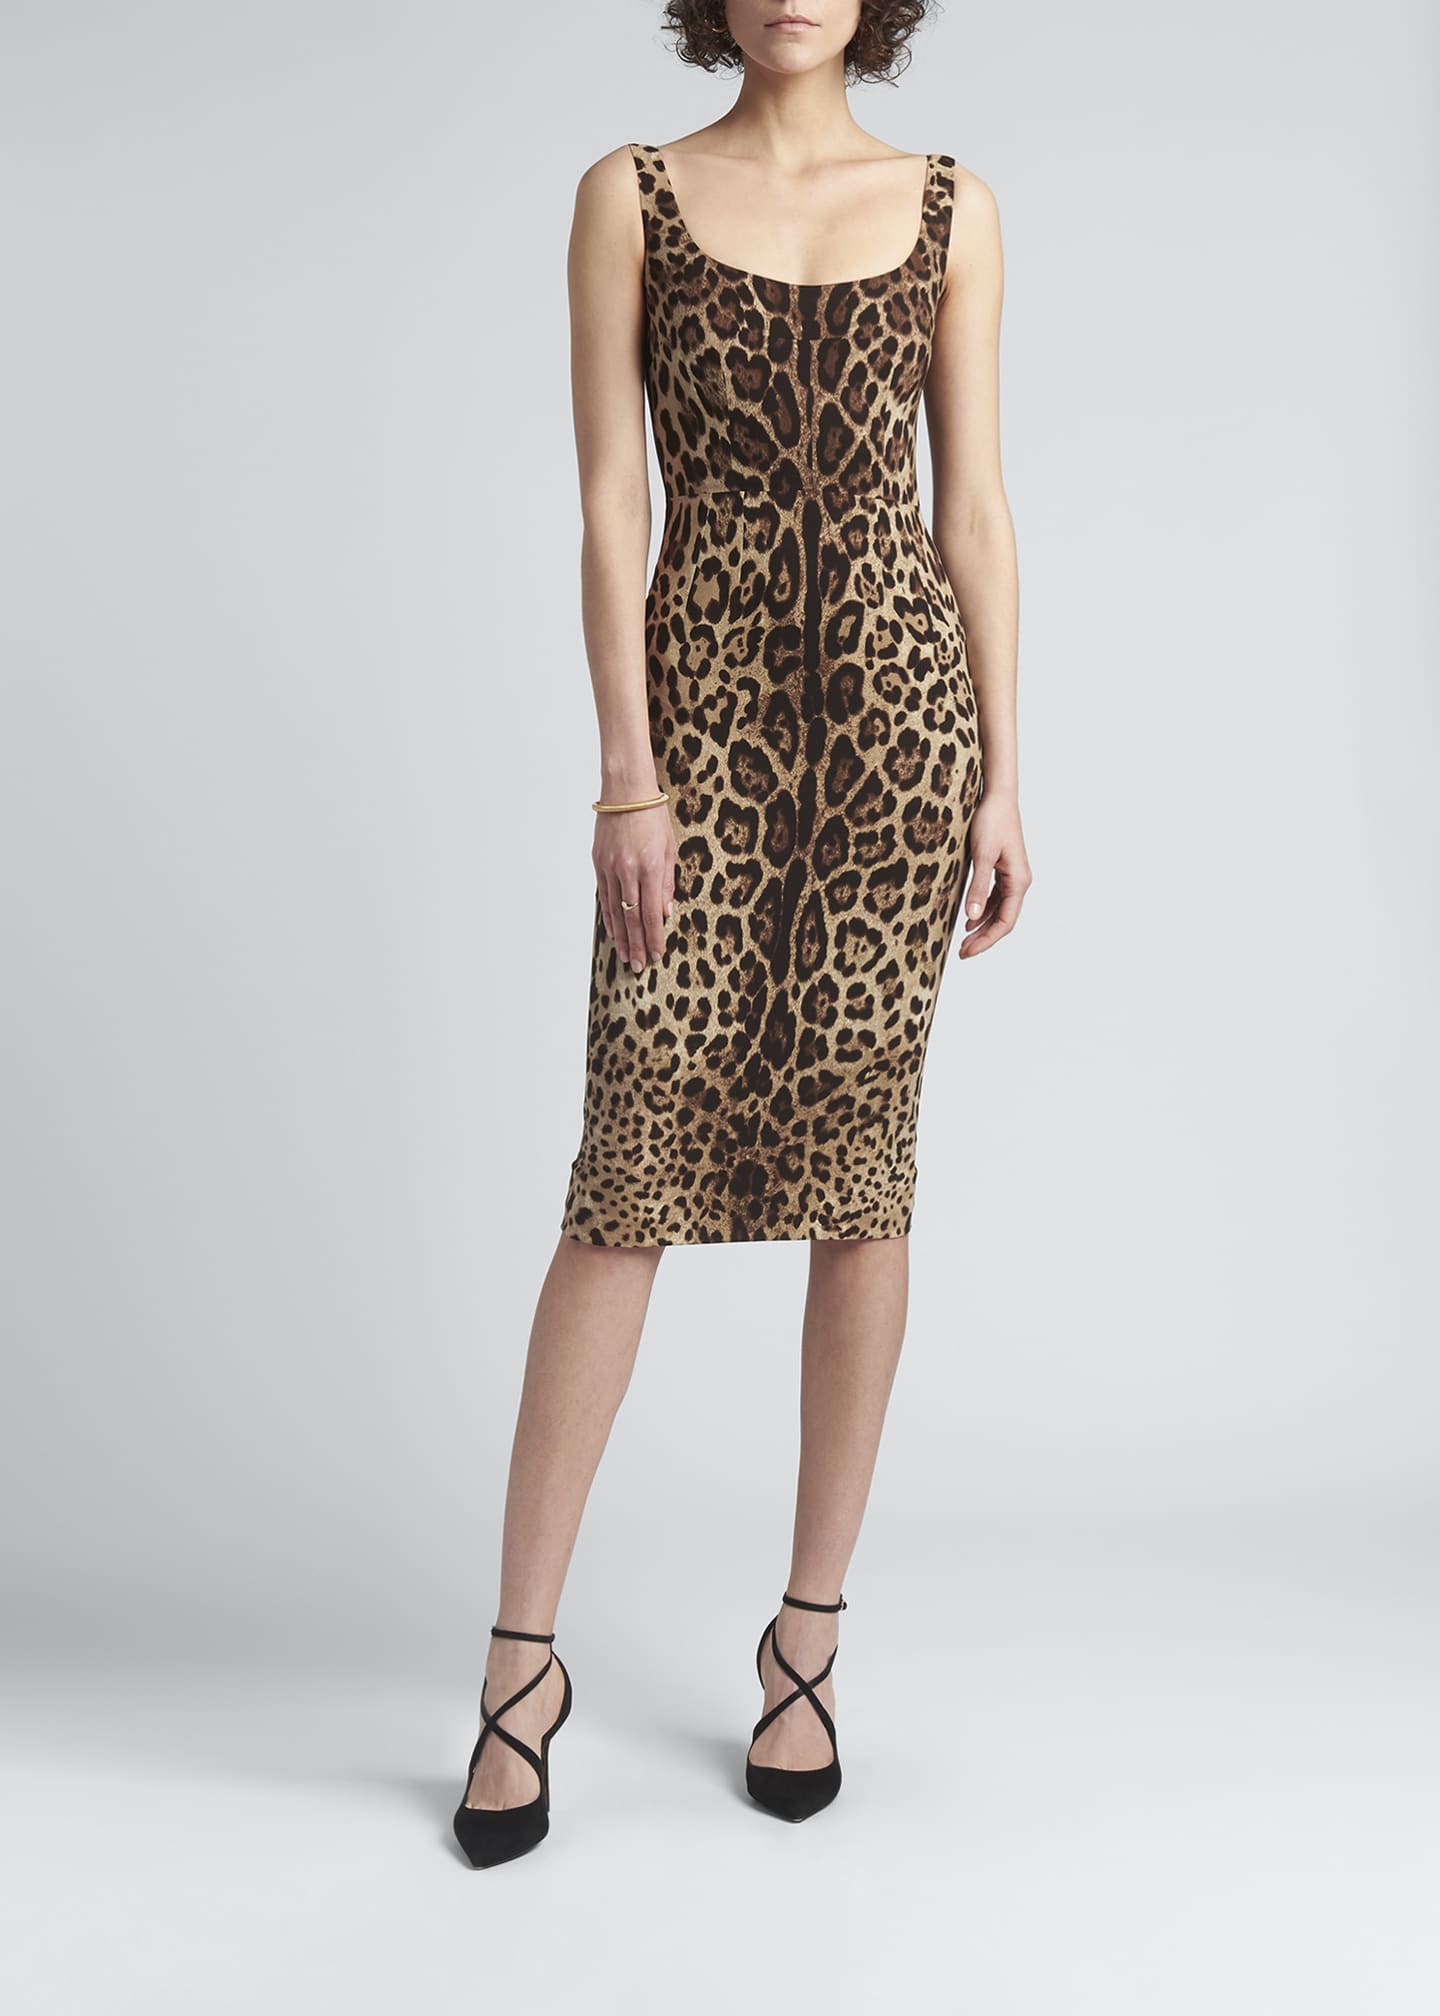 Dolce&Gabbana Leopard-Print Slim Midi Dress - Bergdorf Goodman